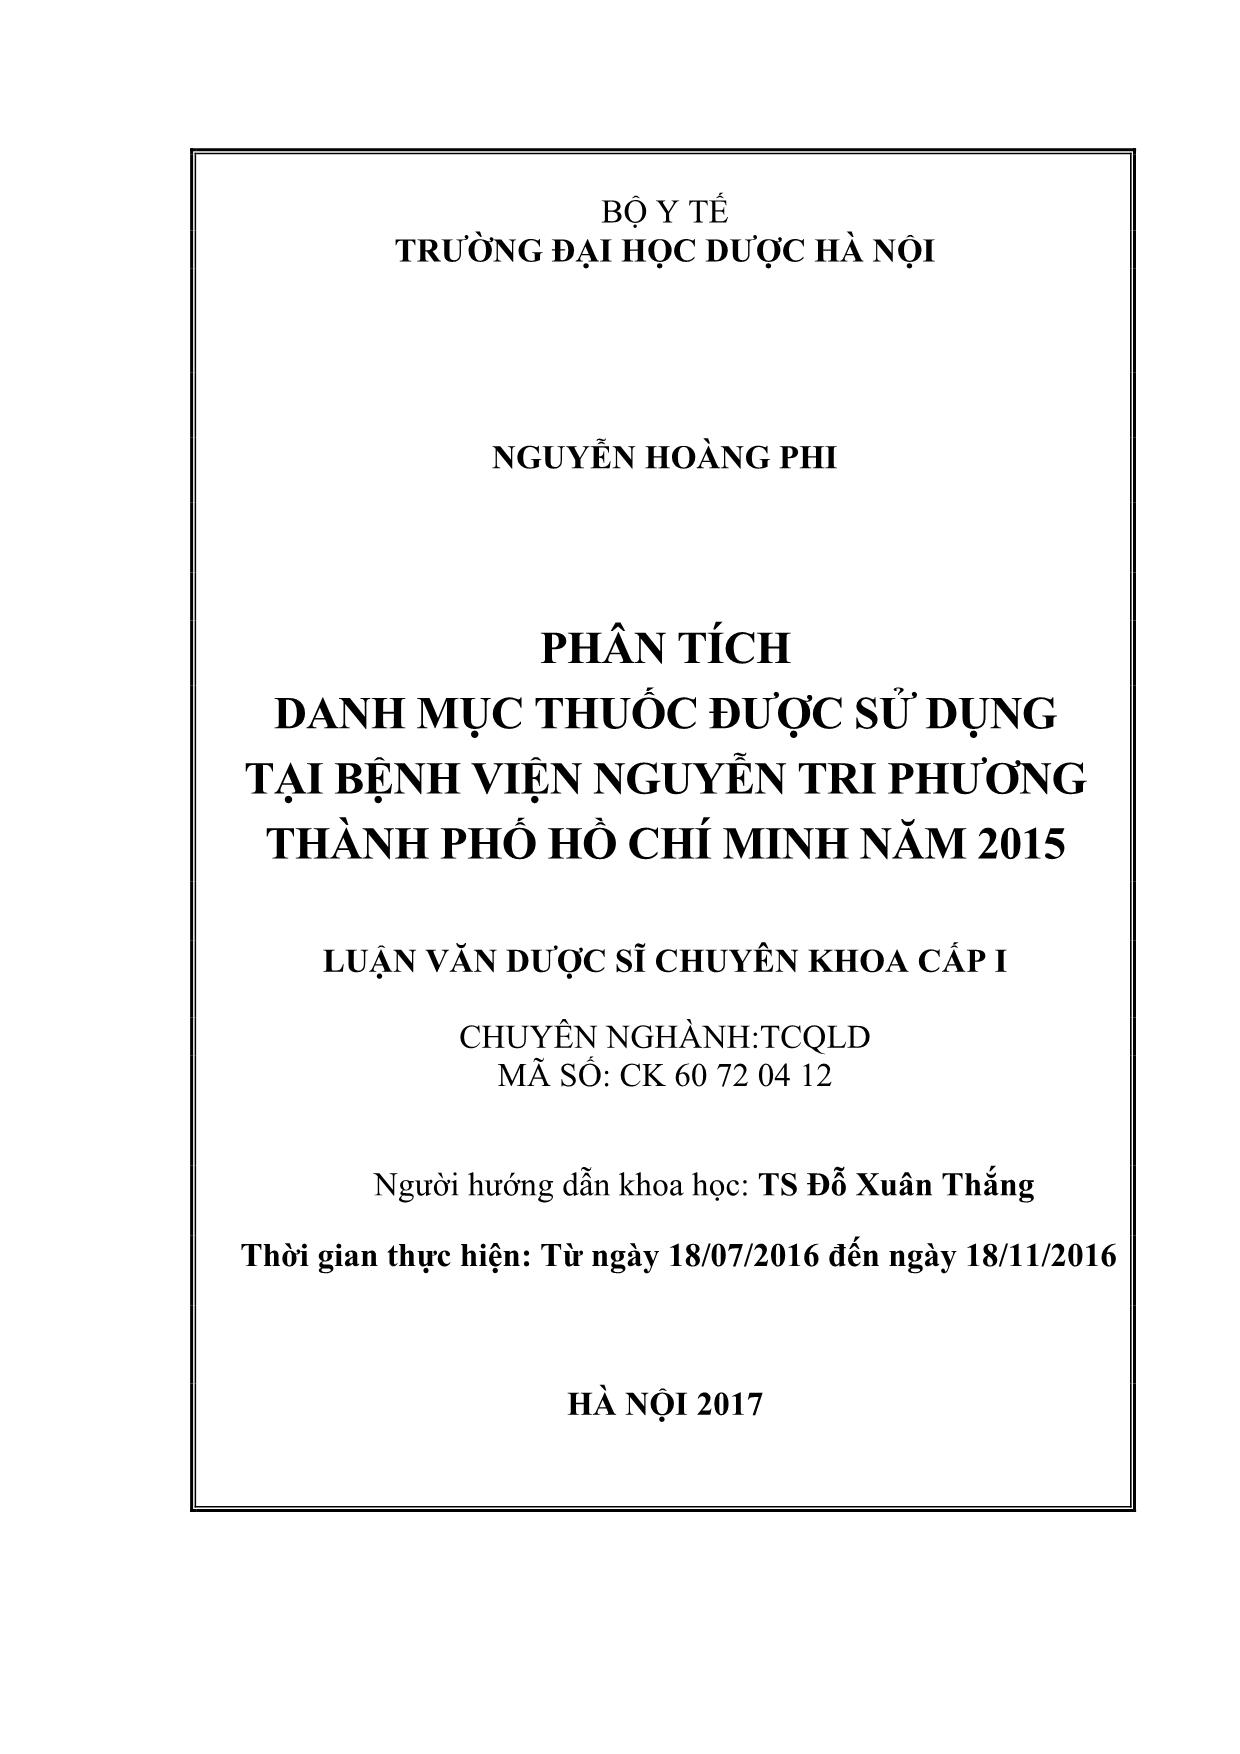 Phân tích danh mục thuốc được sử dụng tại bệnh viện Nguyễn Tri Phương thành phố Hồ Chí Minh năm 2015 trang 2